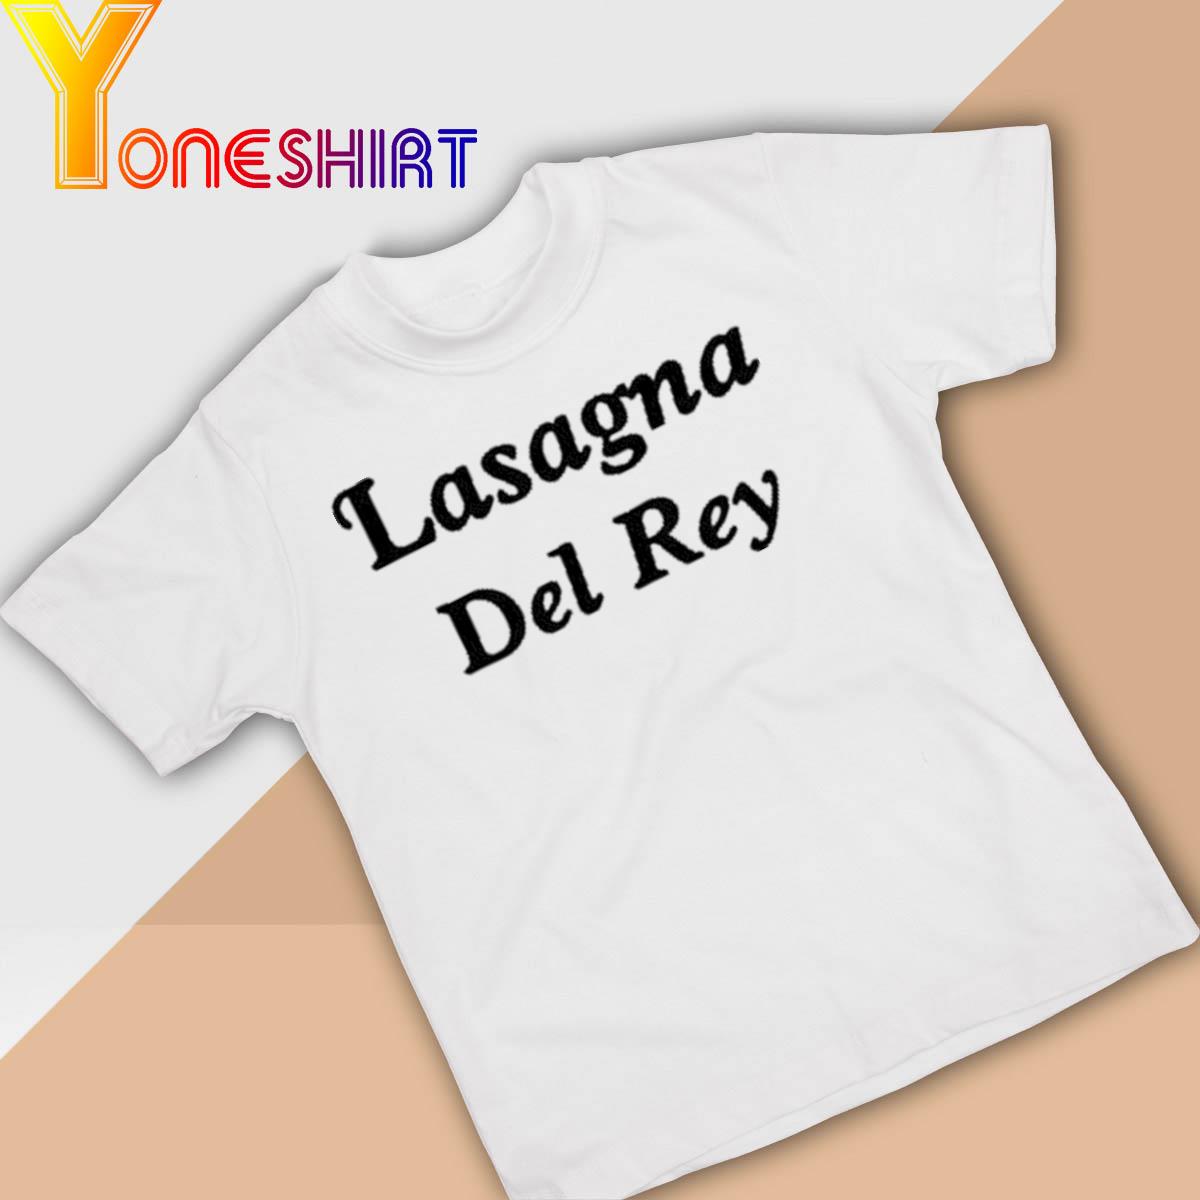 Lasagna Del Rey Shirt